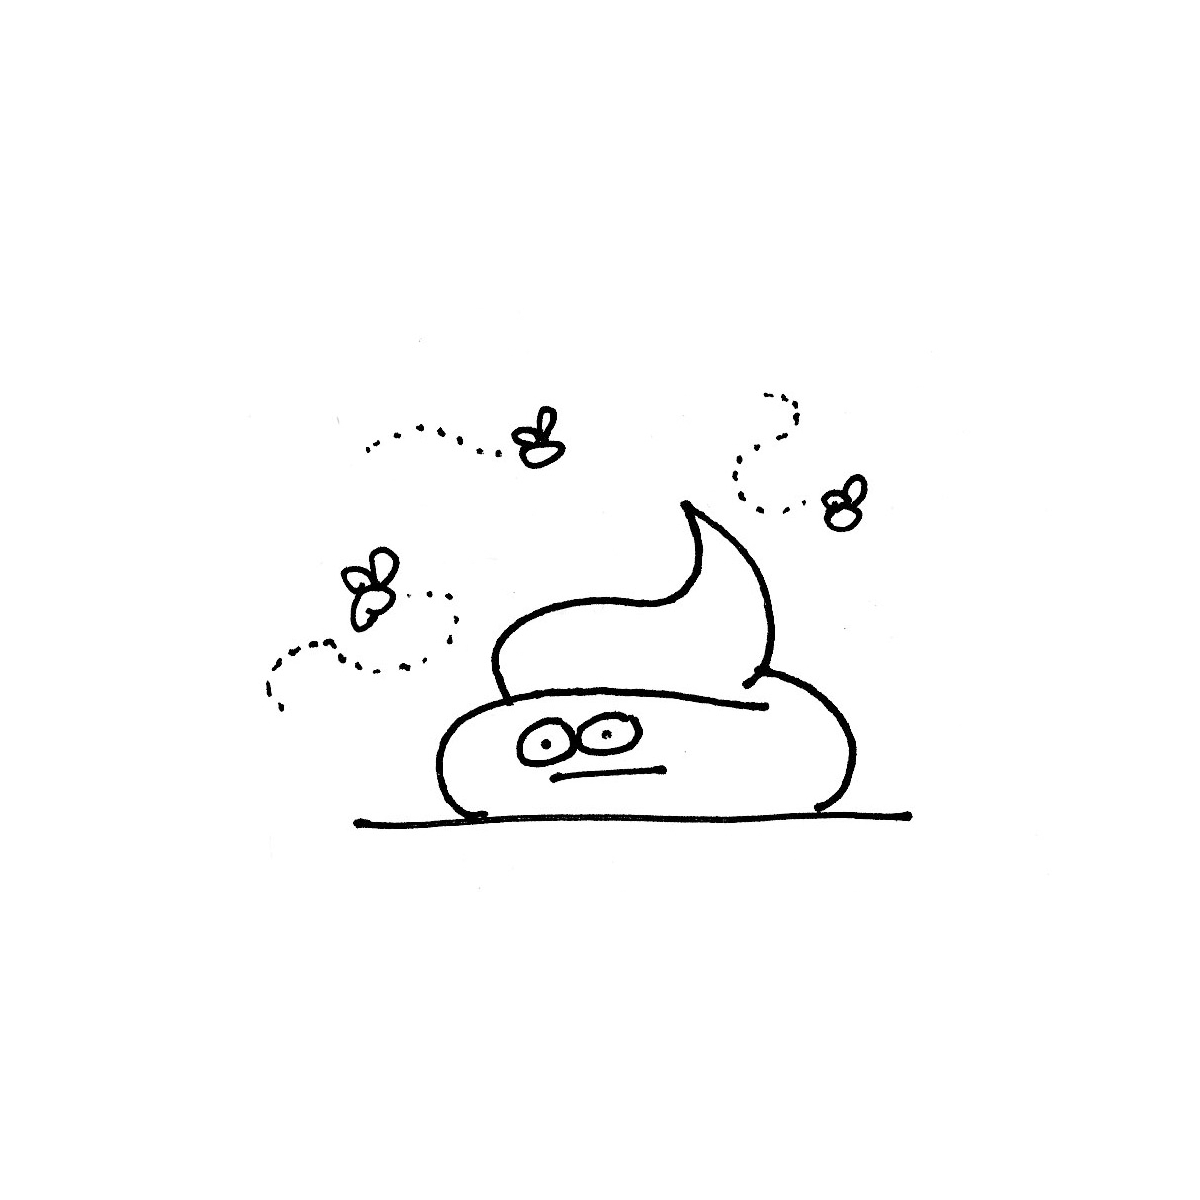 doodles-pen-poo-with-flies